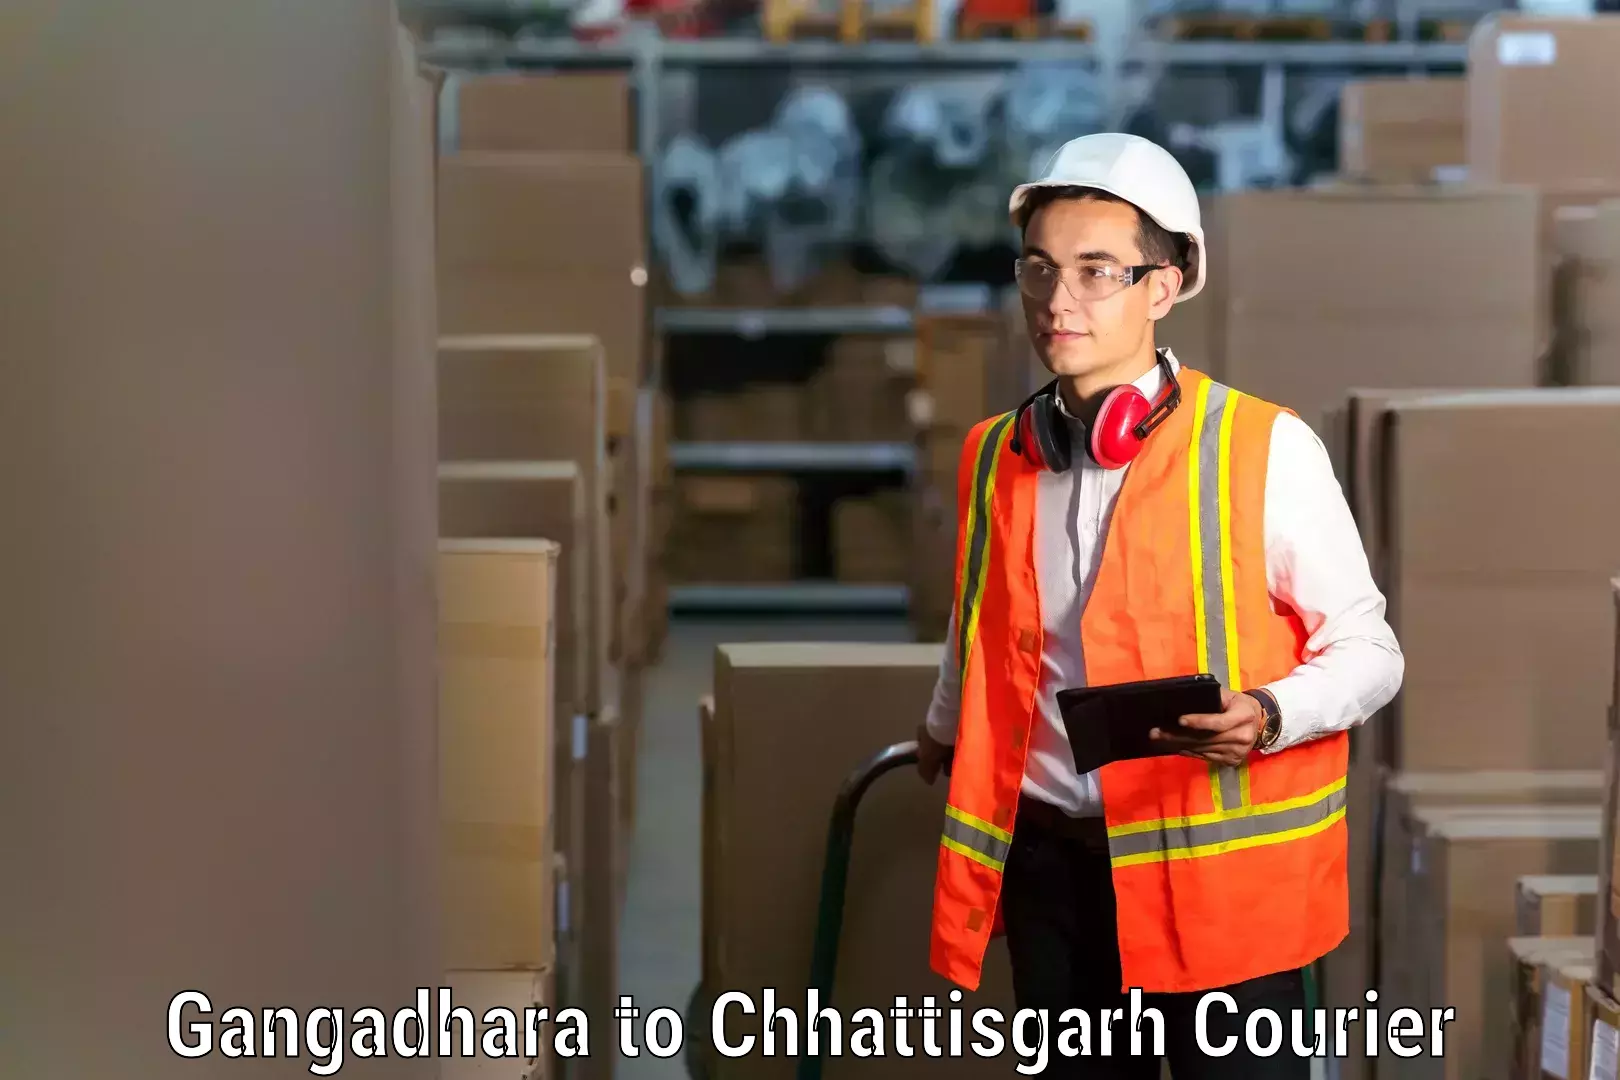 Home moving and storage Gangadhara to Chhattisgarh